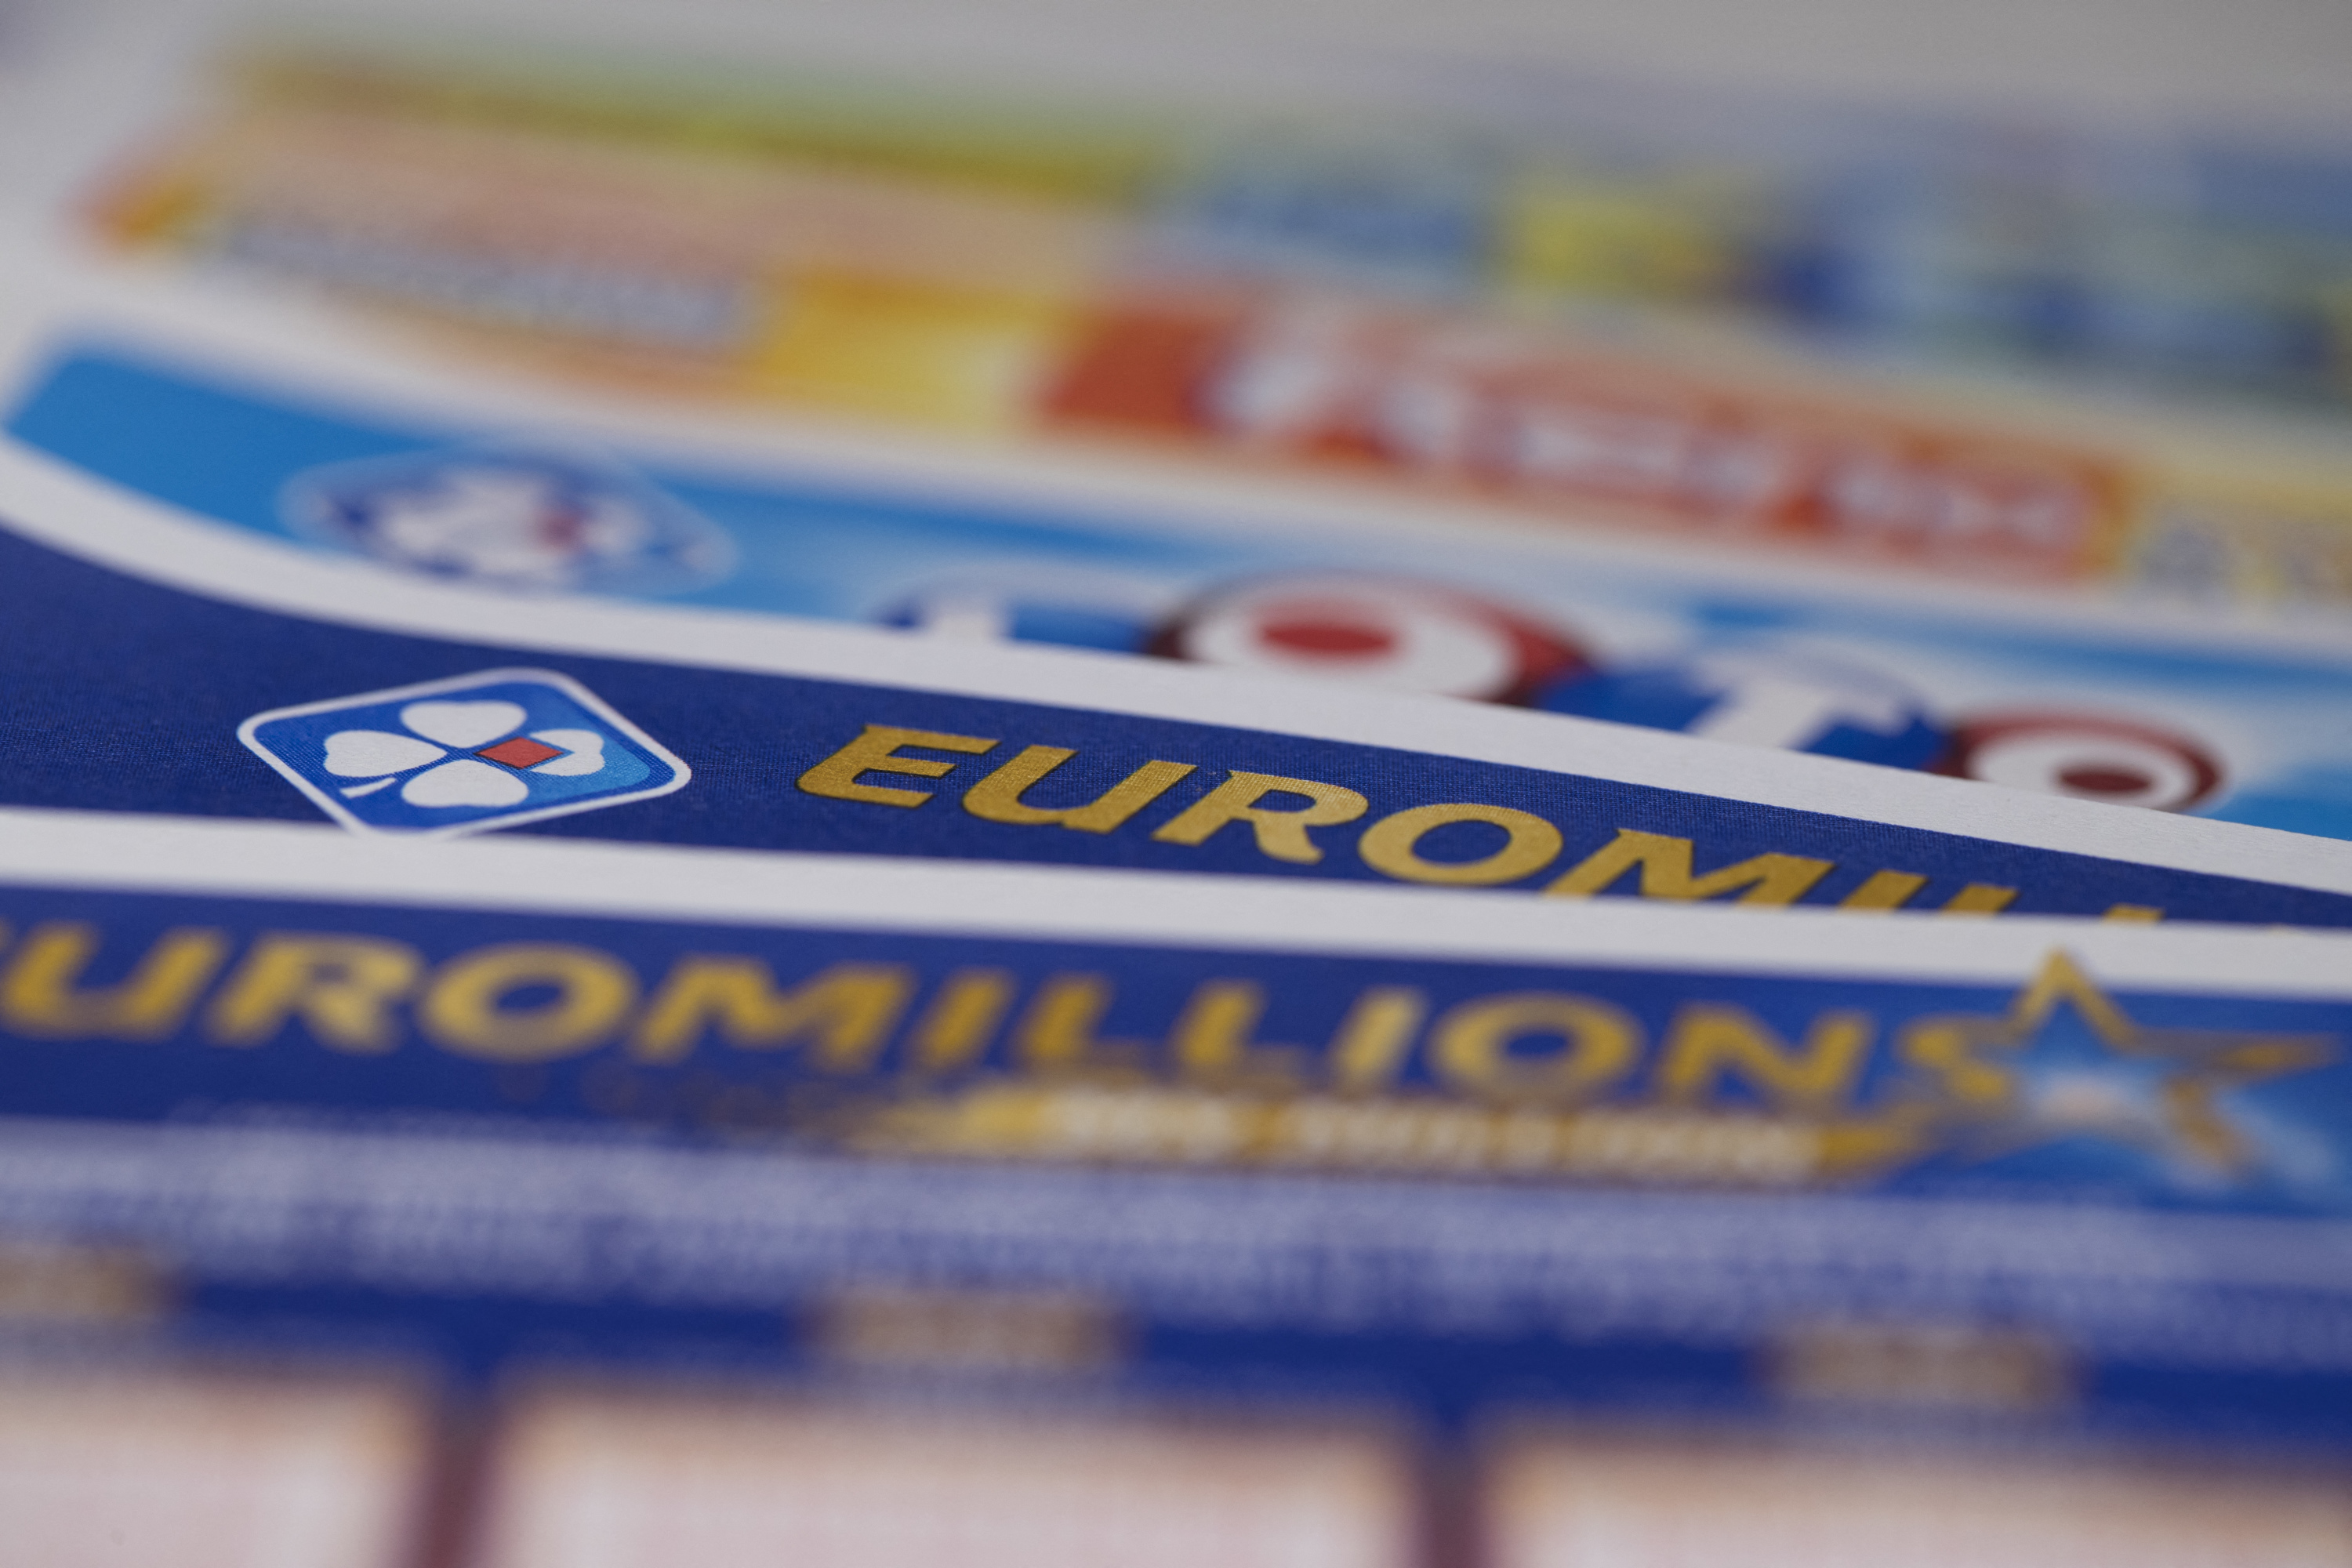 Euromillions: le tirage à 190 millions fait un carton plein - La DH/Les  Sports+